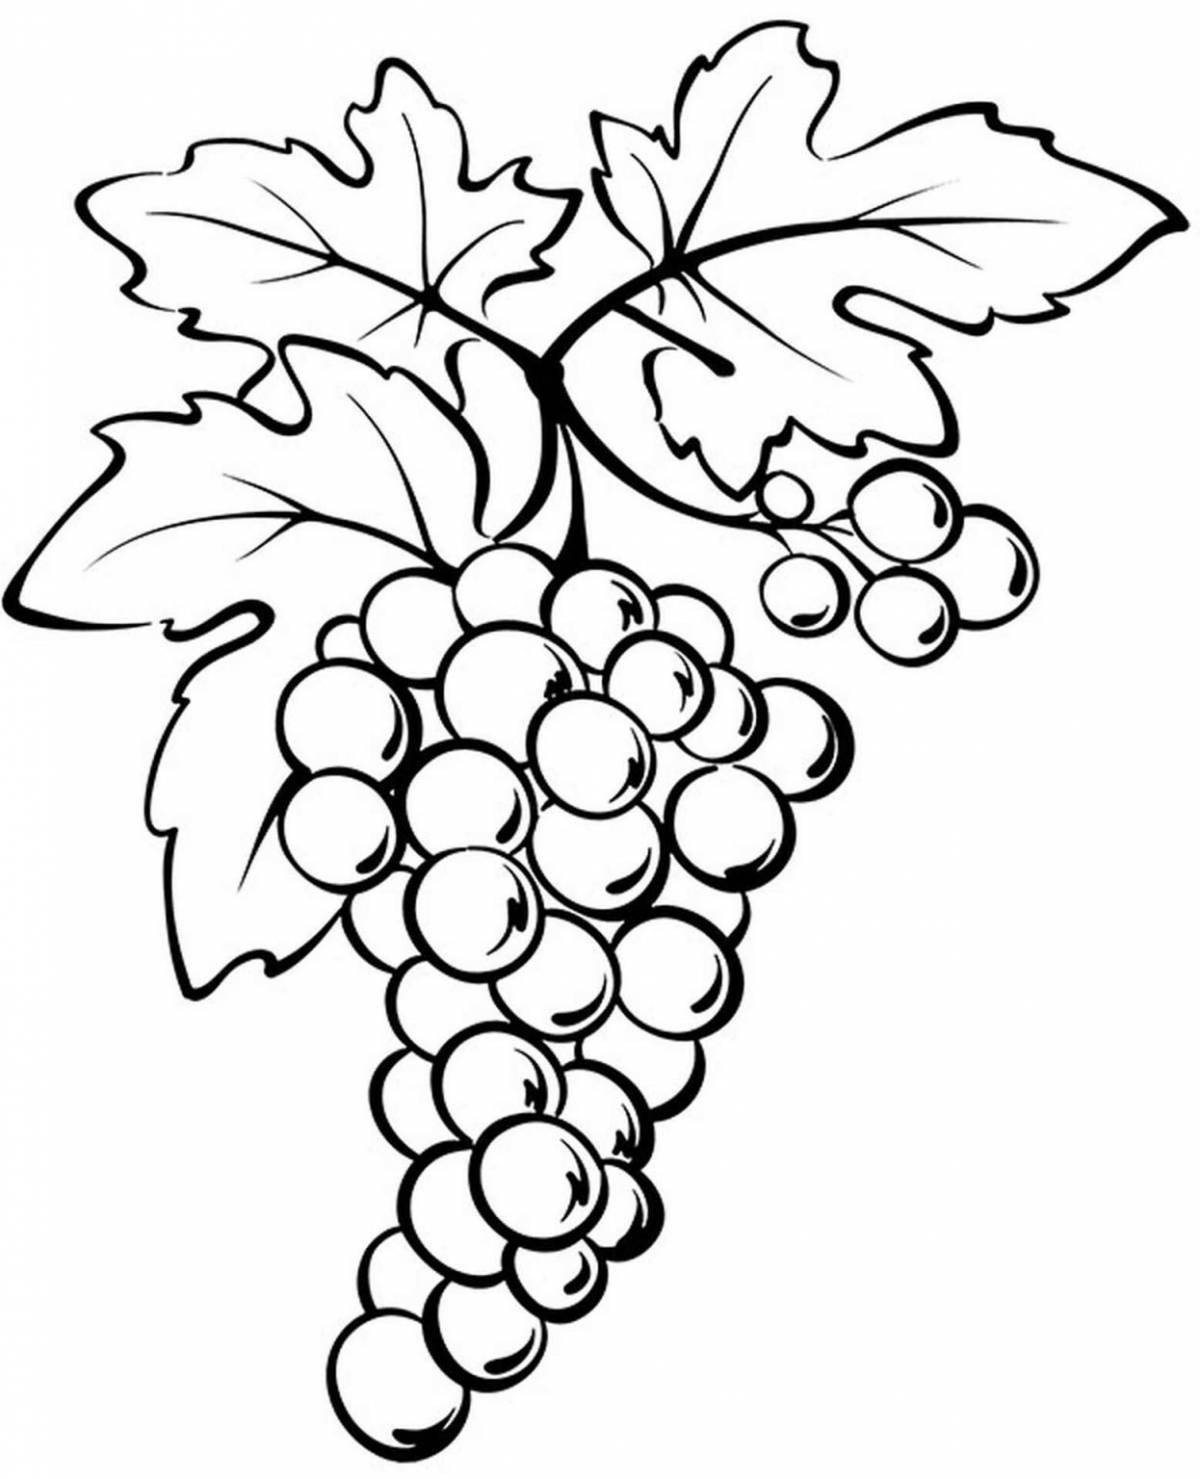 Яркая страница раскраски винограда для детей 5-6 лет